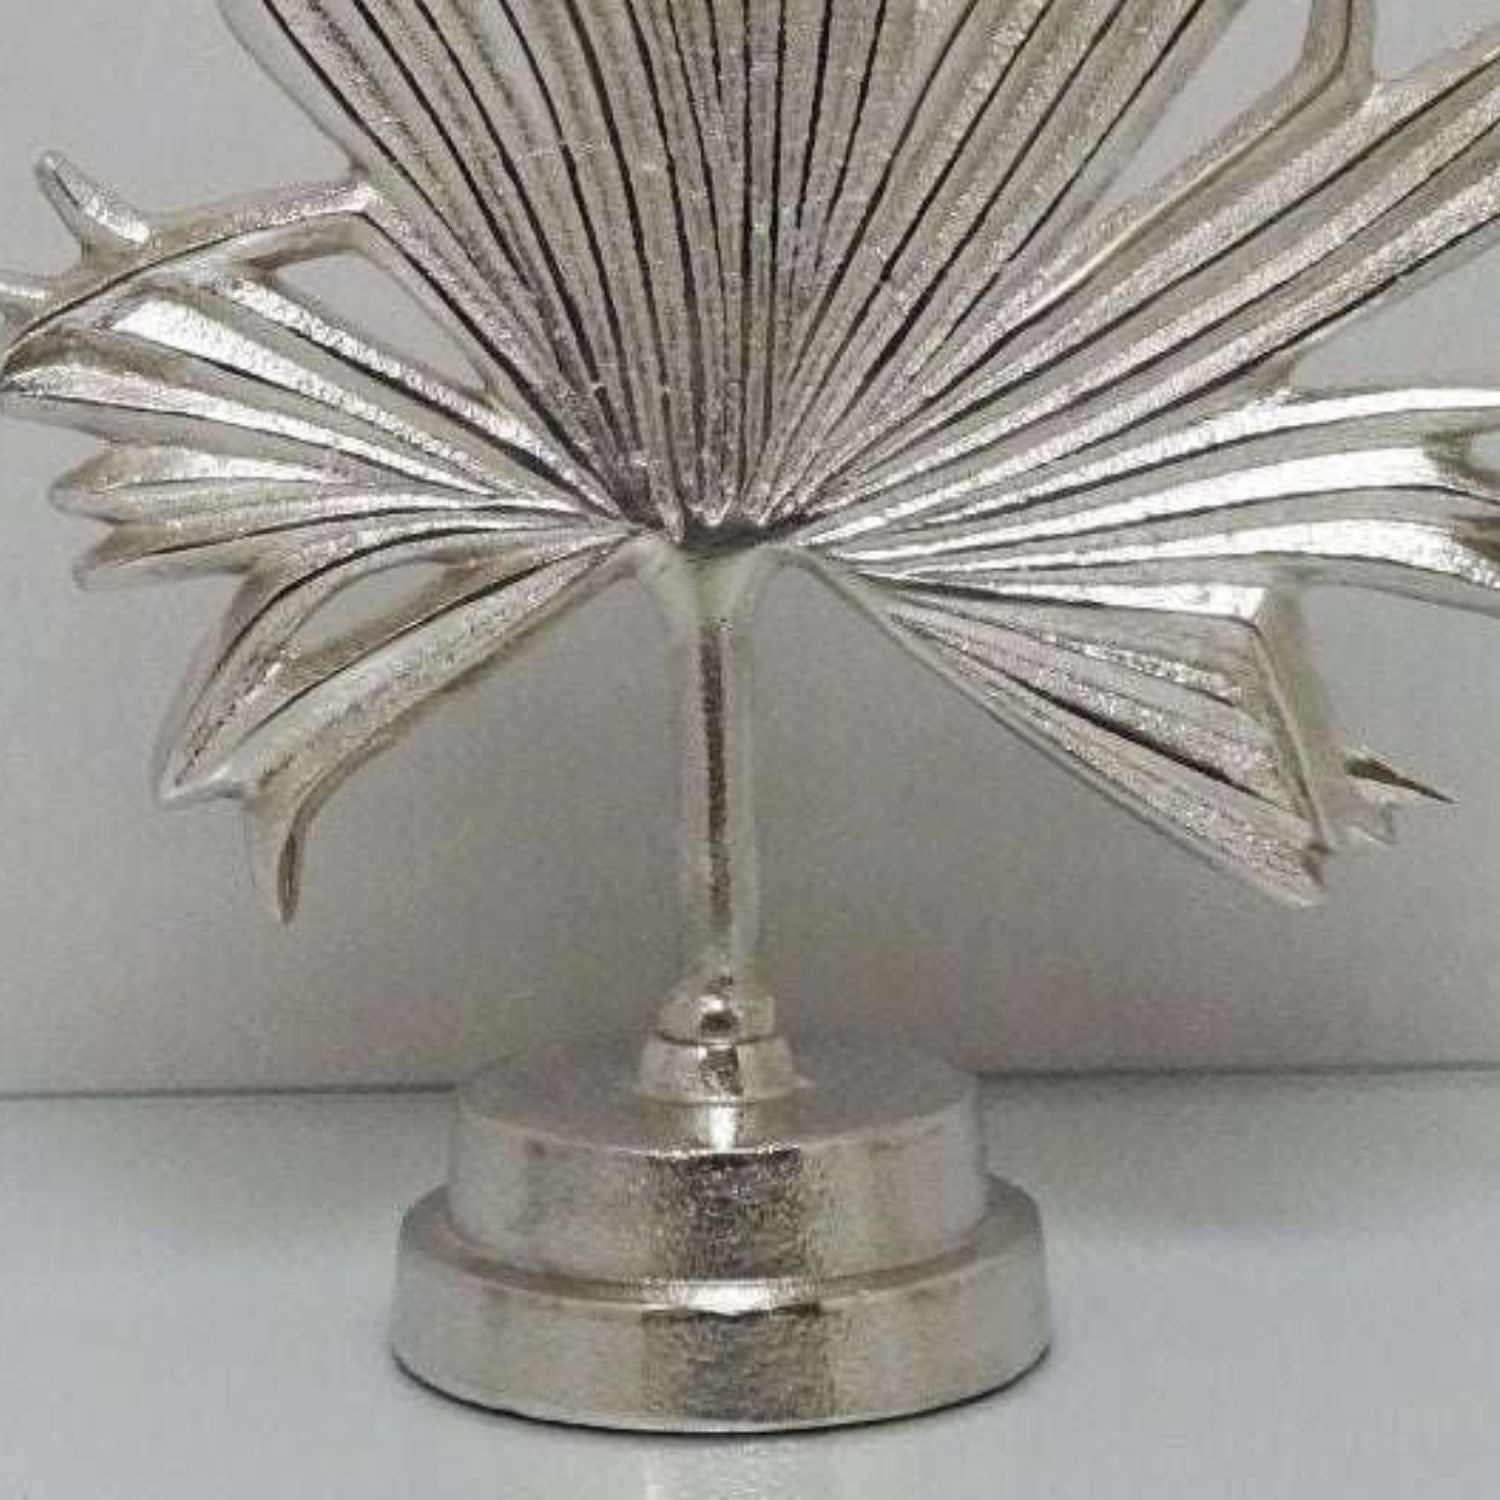 Silver sculputure ornament in foliage design